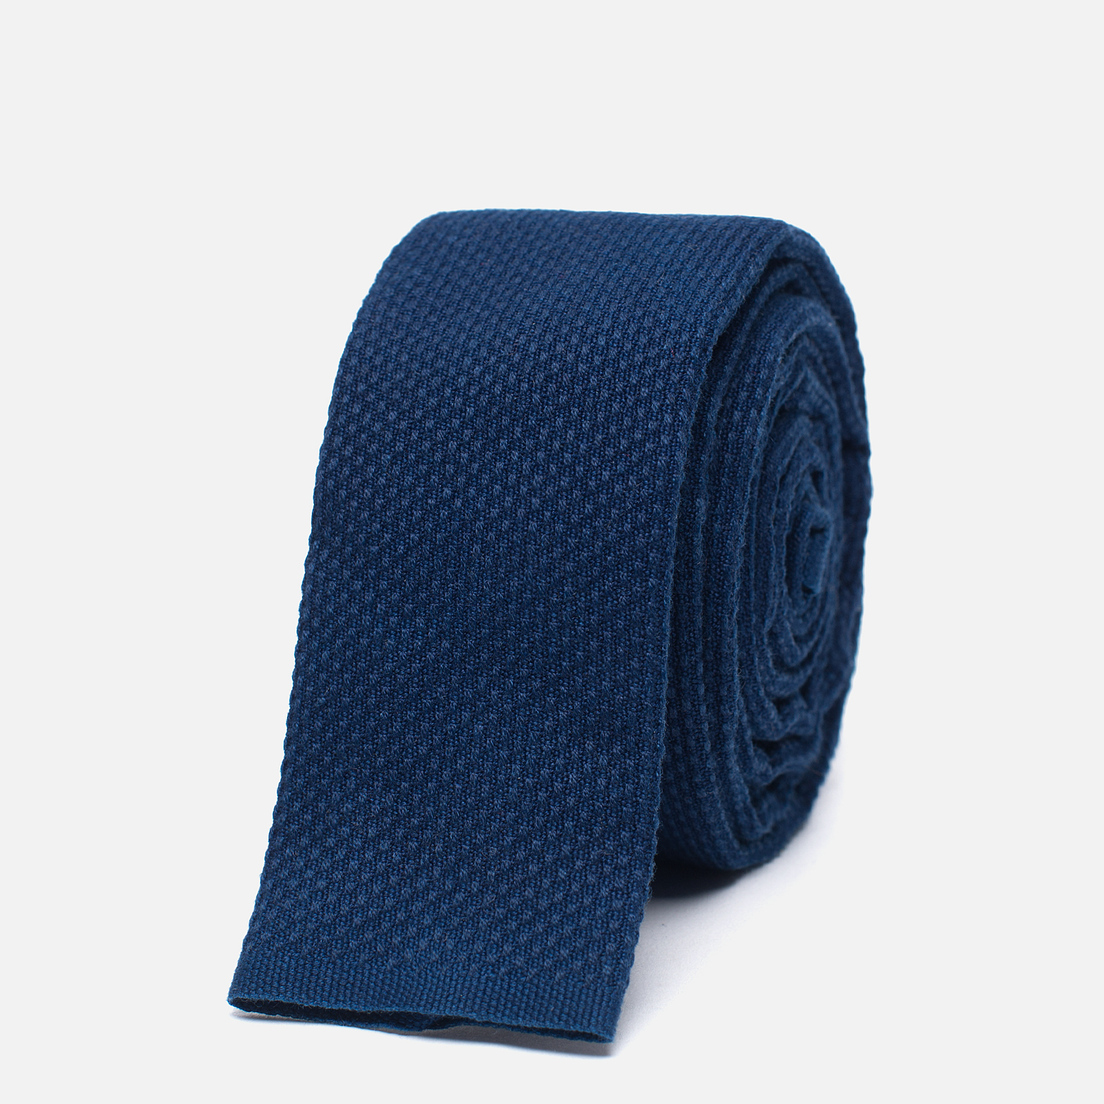 The Hill-Side Мужской галстук Selvedge Lightweight